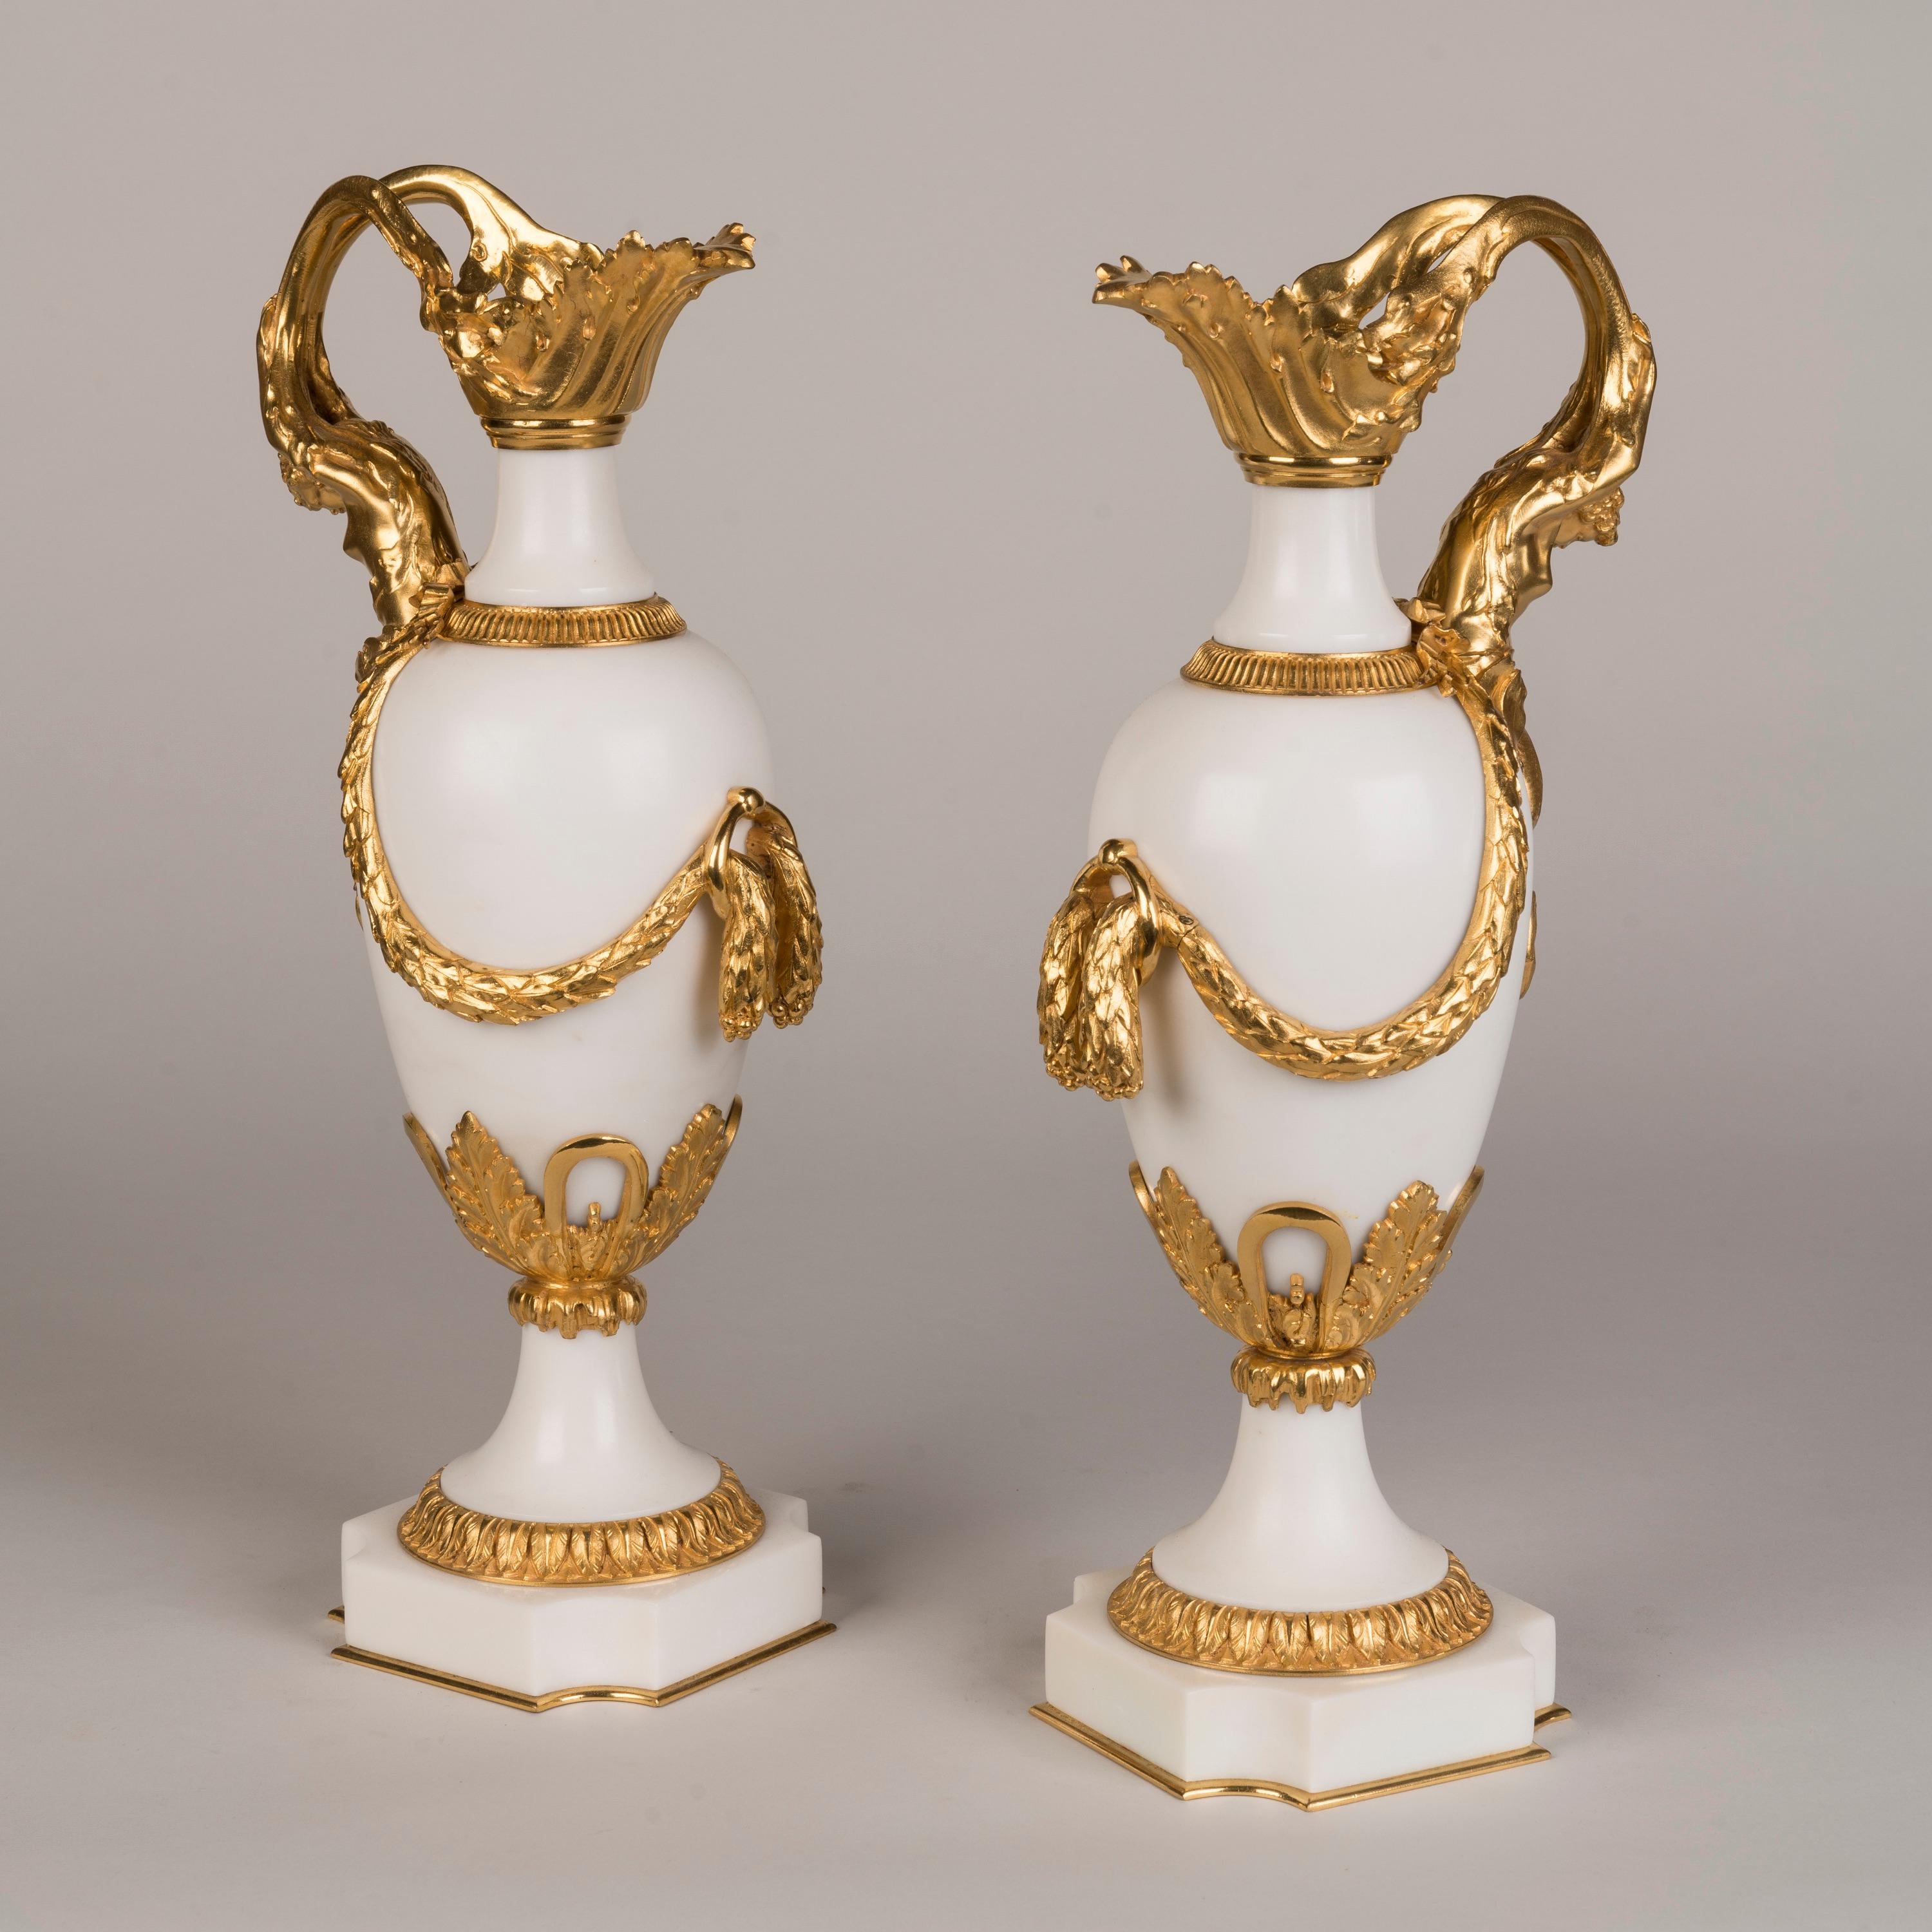 Ein Paar Ormolu-gefasste Marmorvasen
Im Stil von Louis XVI

Eiförmige Vasen aus reinem Carrara-Marmor, auf gewölbten Sockeln und taillierten Sockeln mit steifen Blattbordüren, aufwändig mit Ormolu beschlagen, mit geformter Tülle, die einen Henkel